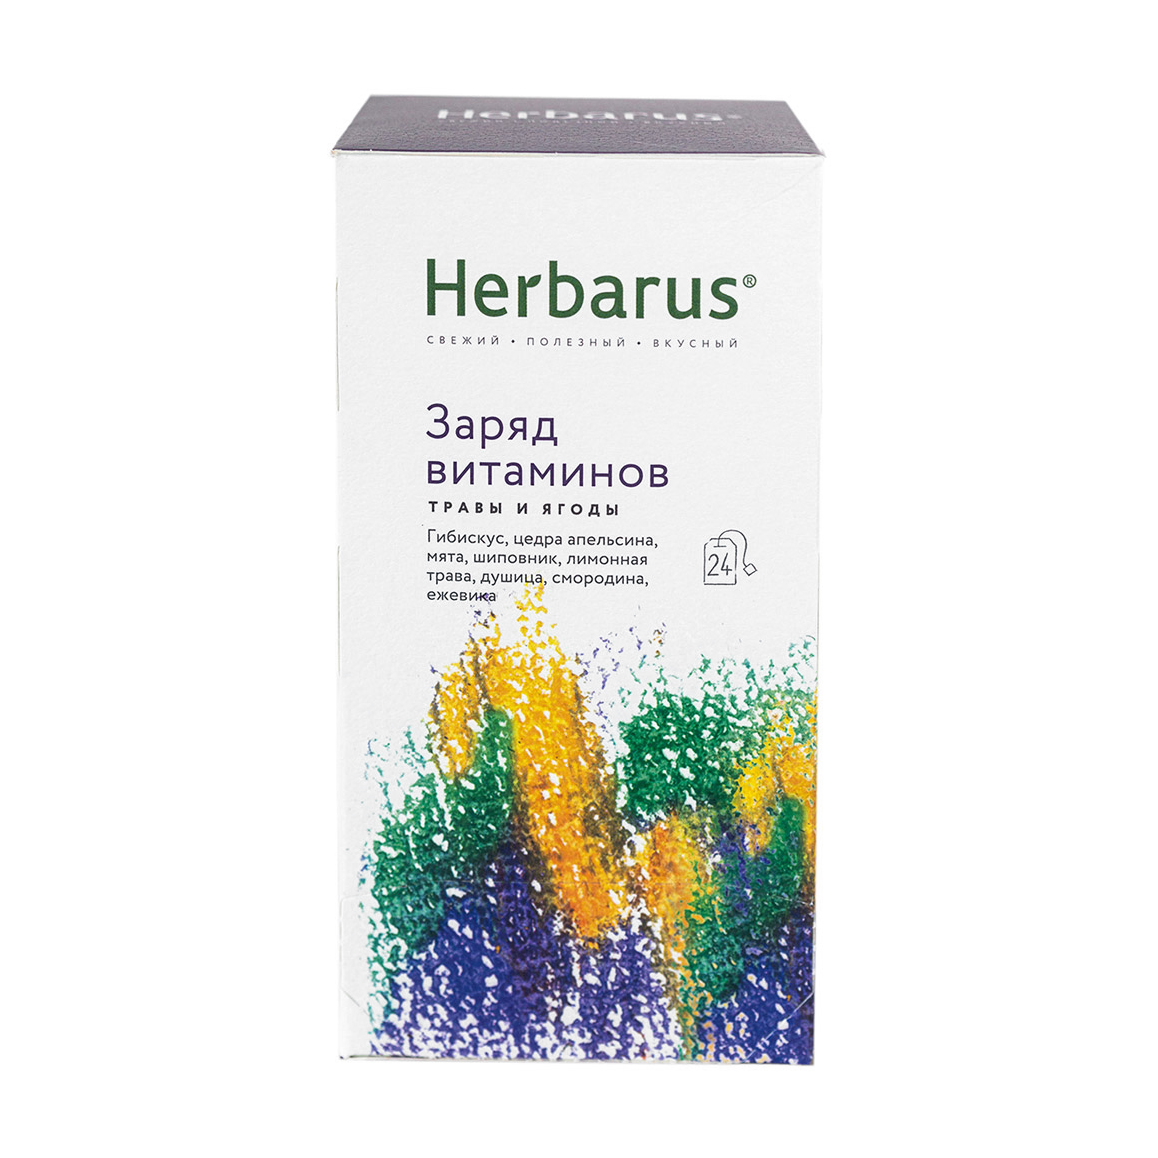 Чайный напиток Herbarus Заряд витаминов 24 пакетика напиток legend of baikal nature шиповник альпийские травы газ ж б 0 33 литра 20 шт в уп